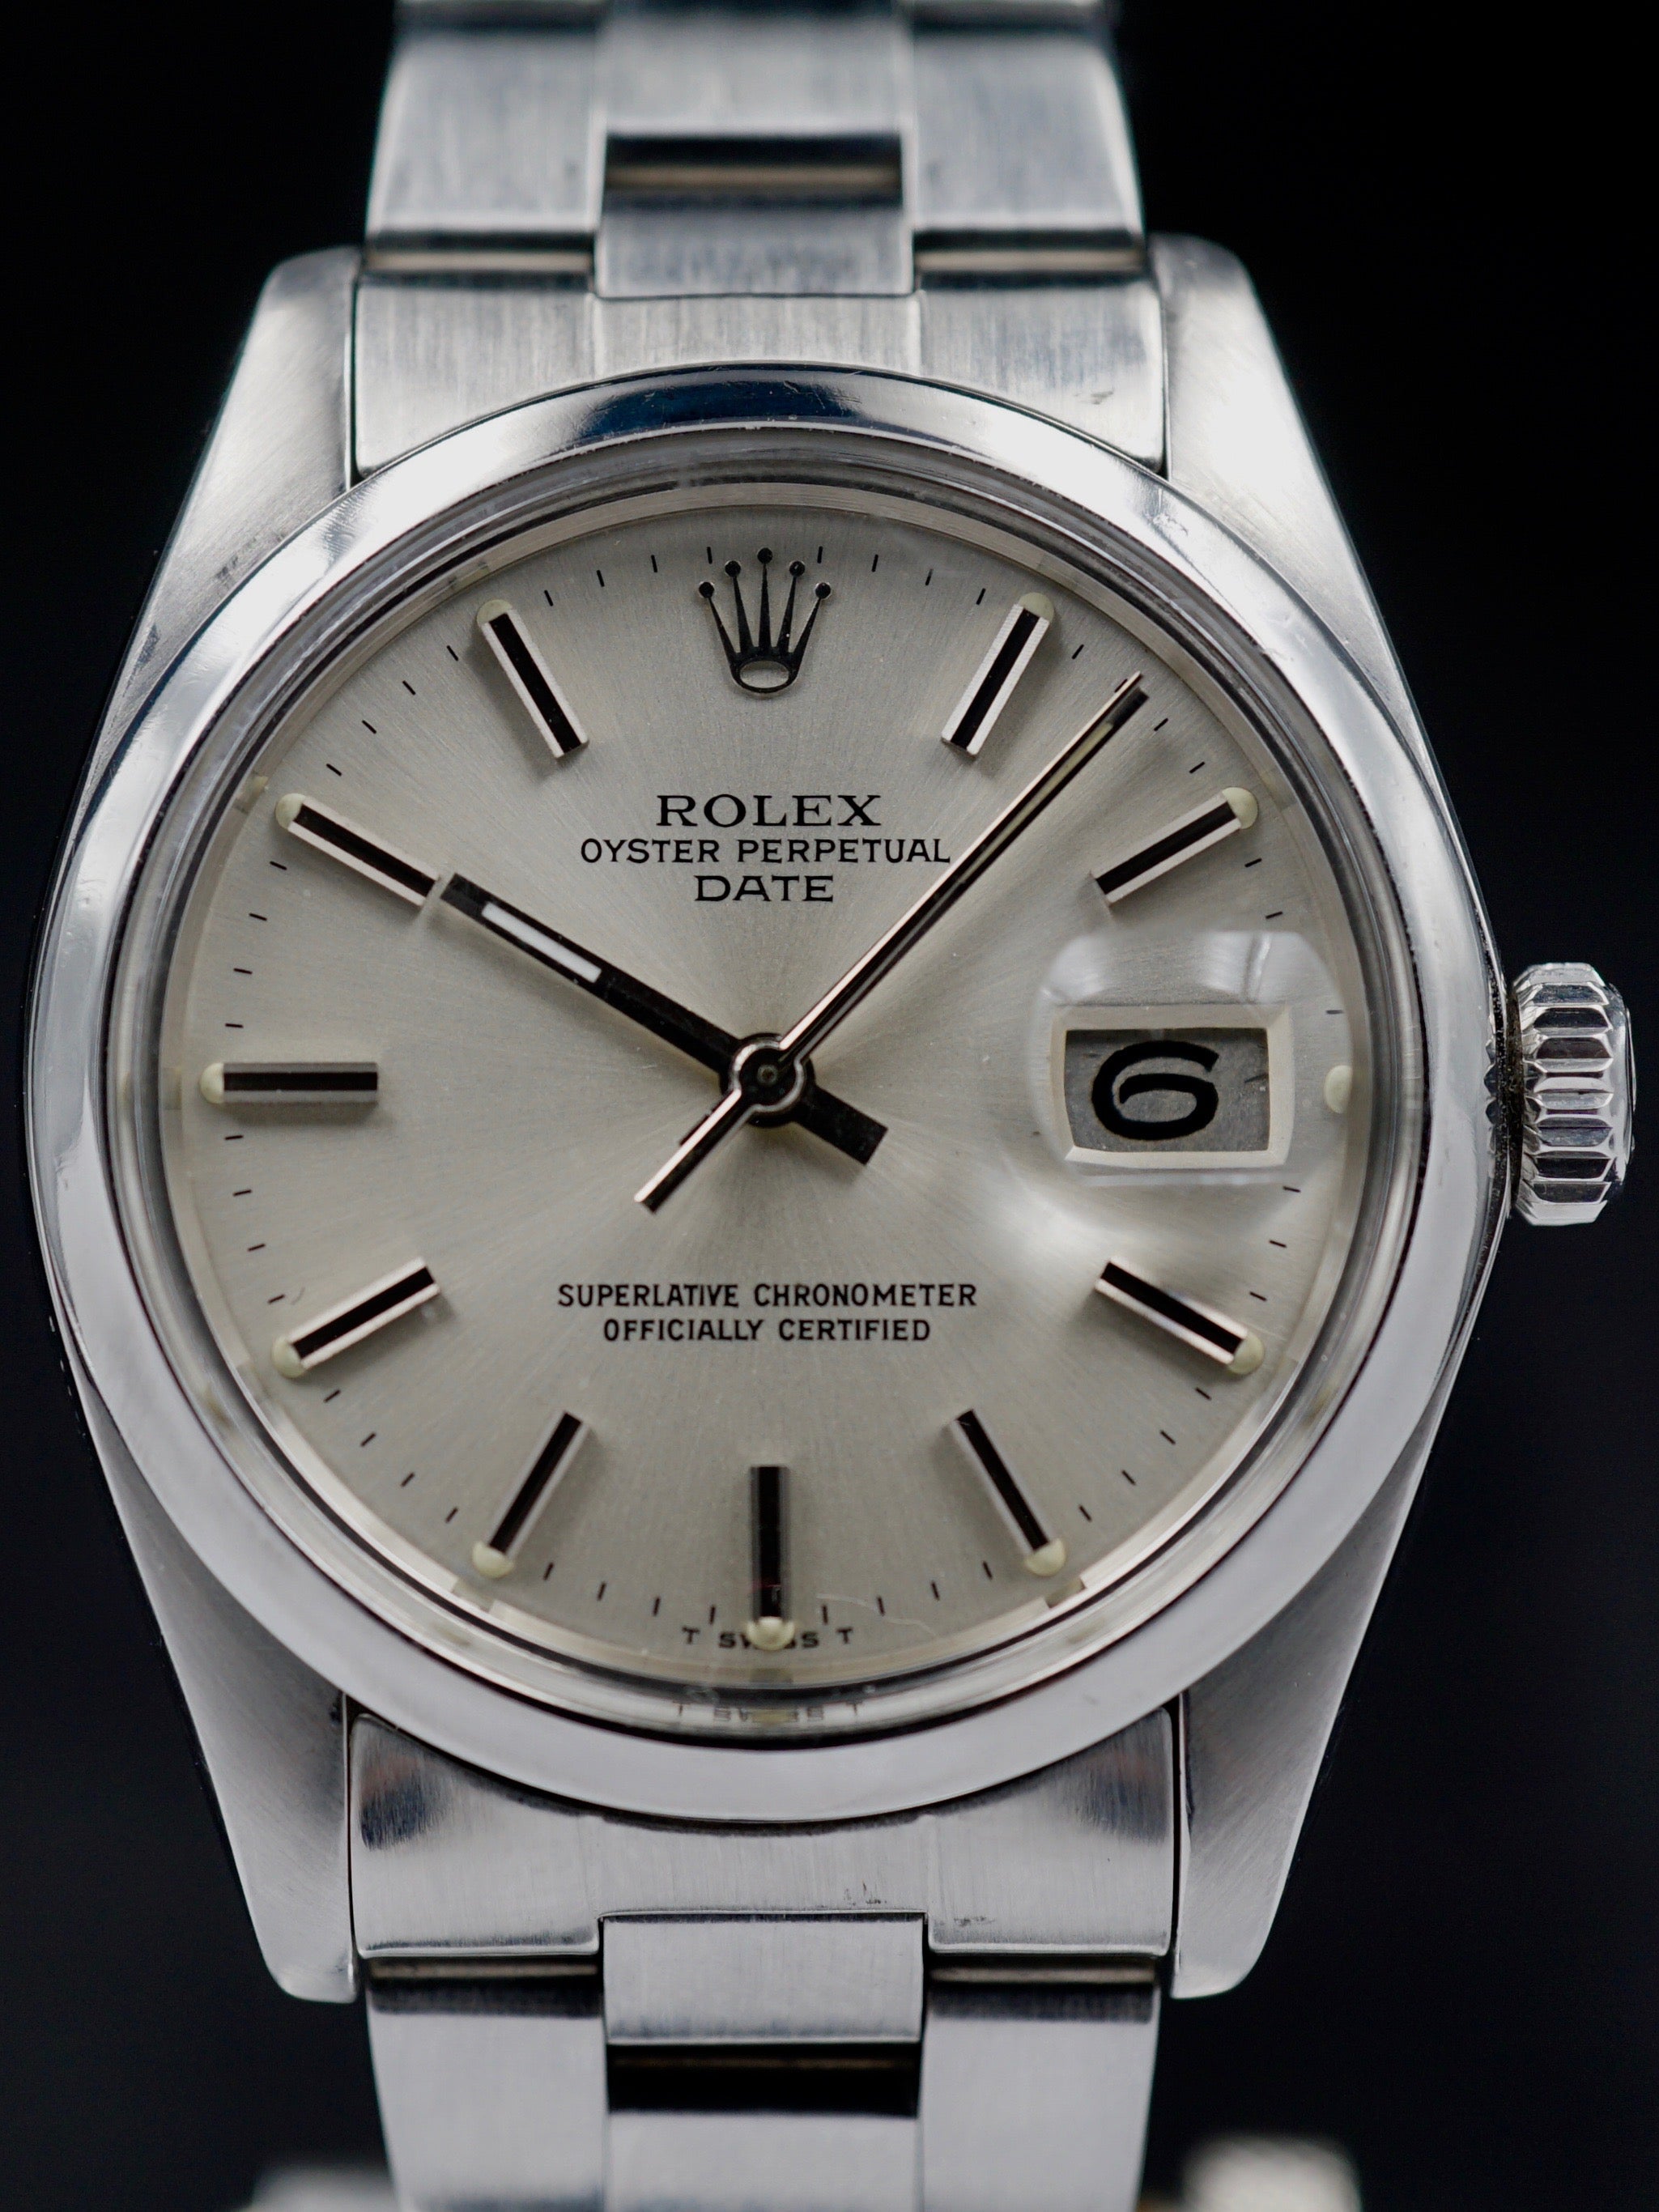 1979 Rolex Oyster Perpetual Date (Ref 